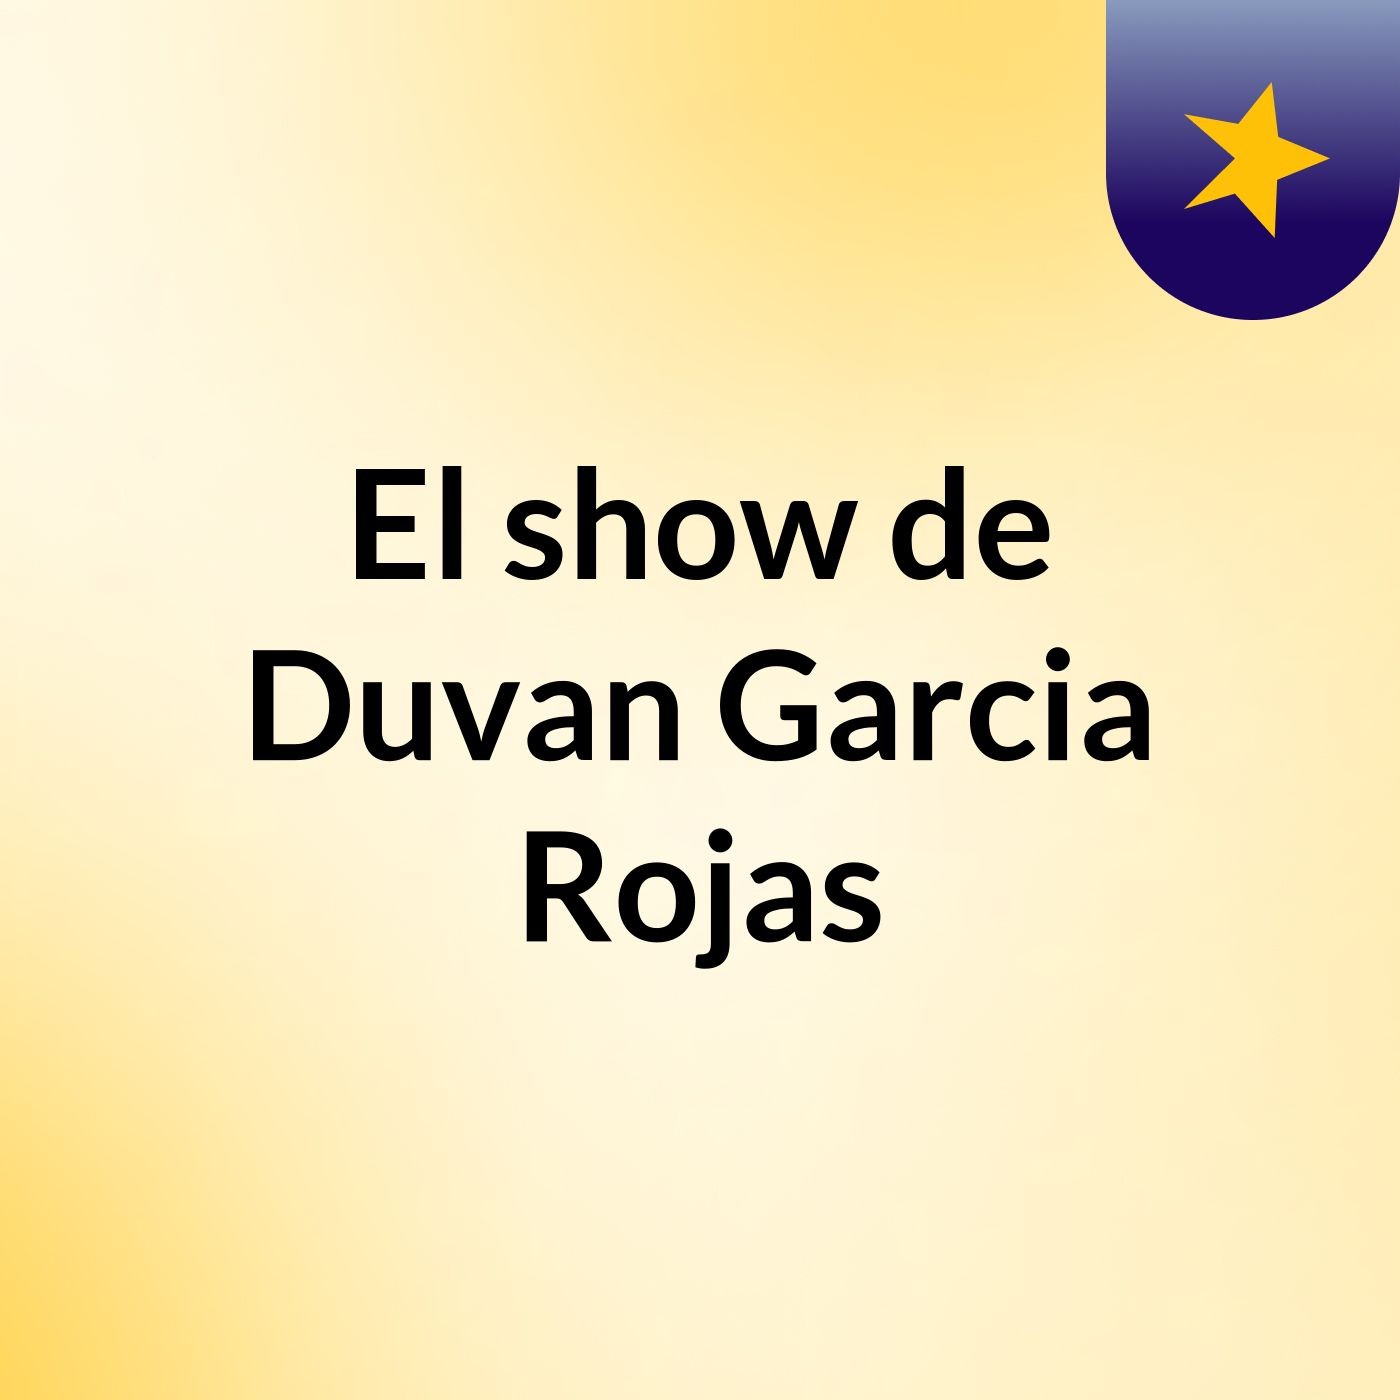 El show de Duvan Garcia Rojas